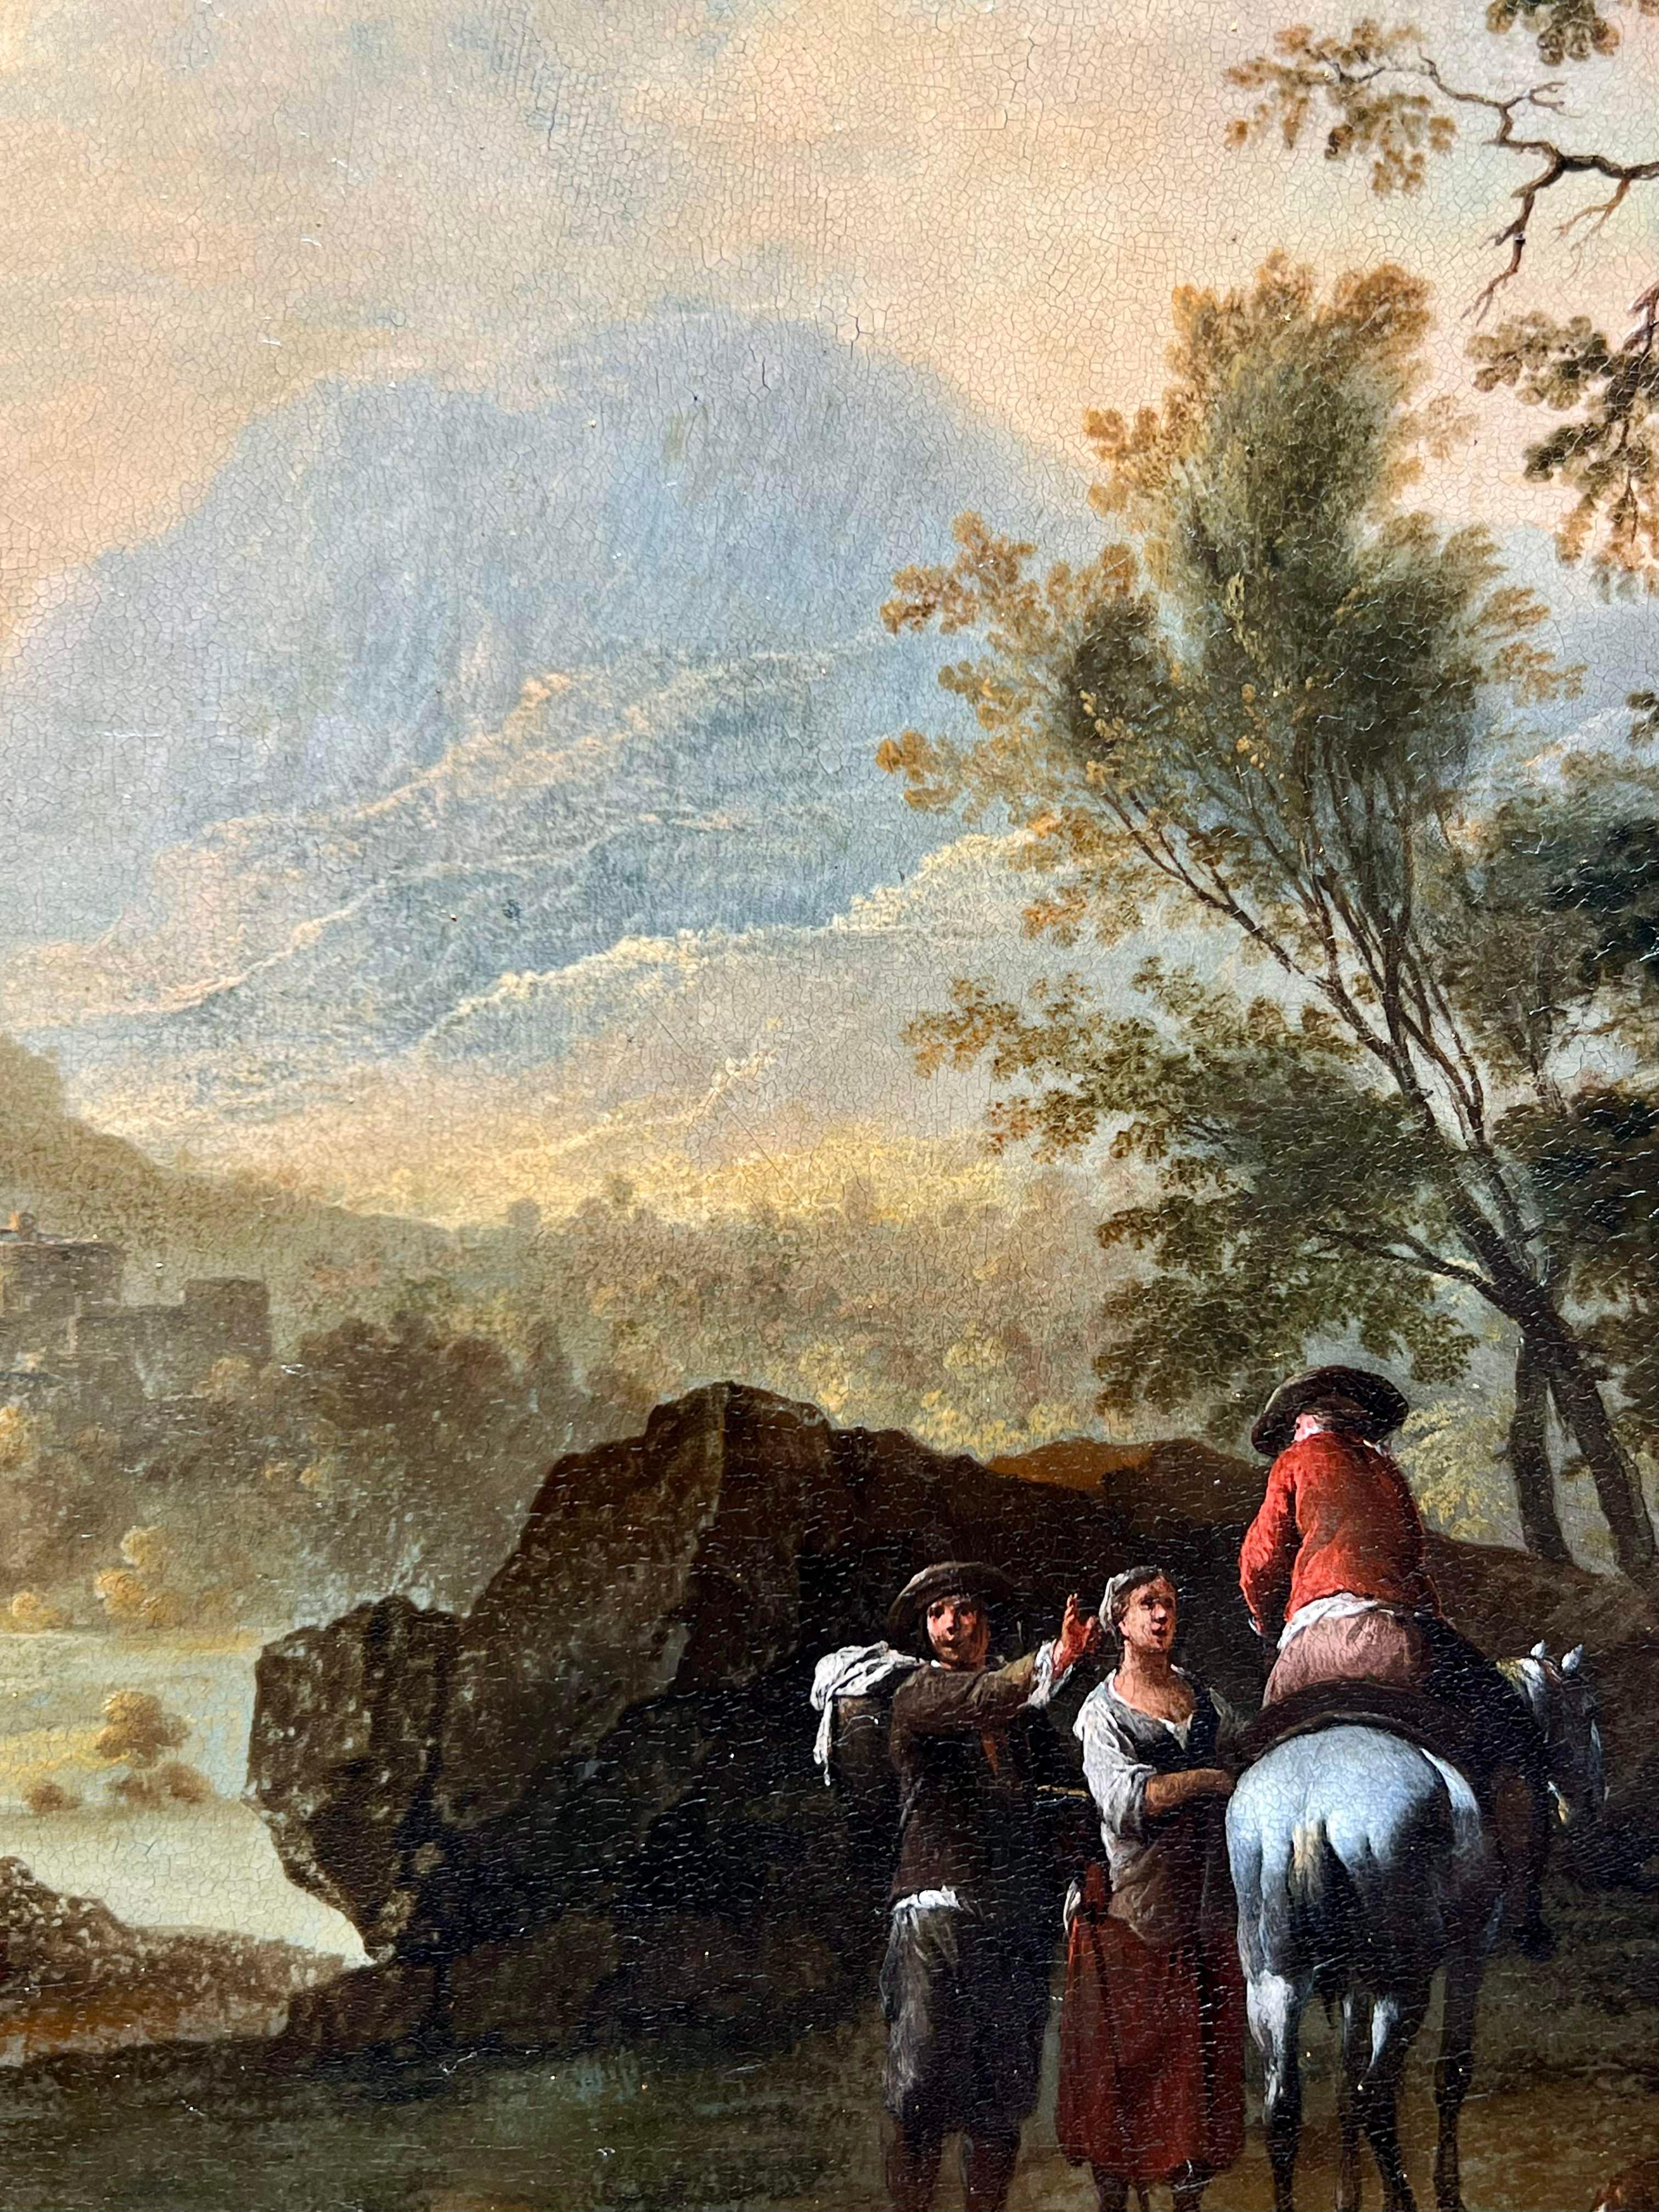 Gemälde eines alten Meisters aus dem 18. Jahrhundert, das eine friedliche Landschaft bei Sonnenuntergang mit einer in der Ferne sichtbaren befestigten Stadt darstellt und Franz Paula de Ferg zugeschrieben wird

In dem vorliegenden juwelenartigen